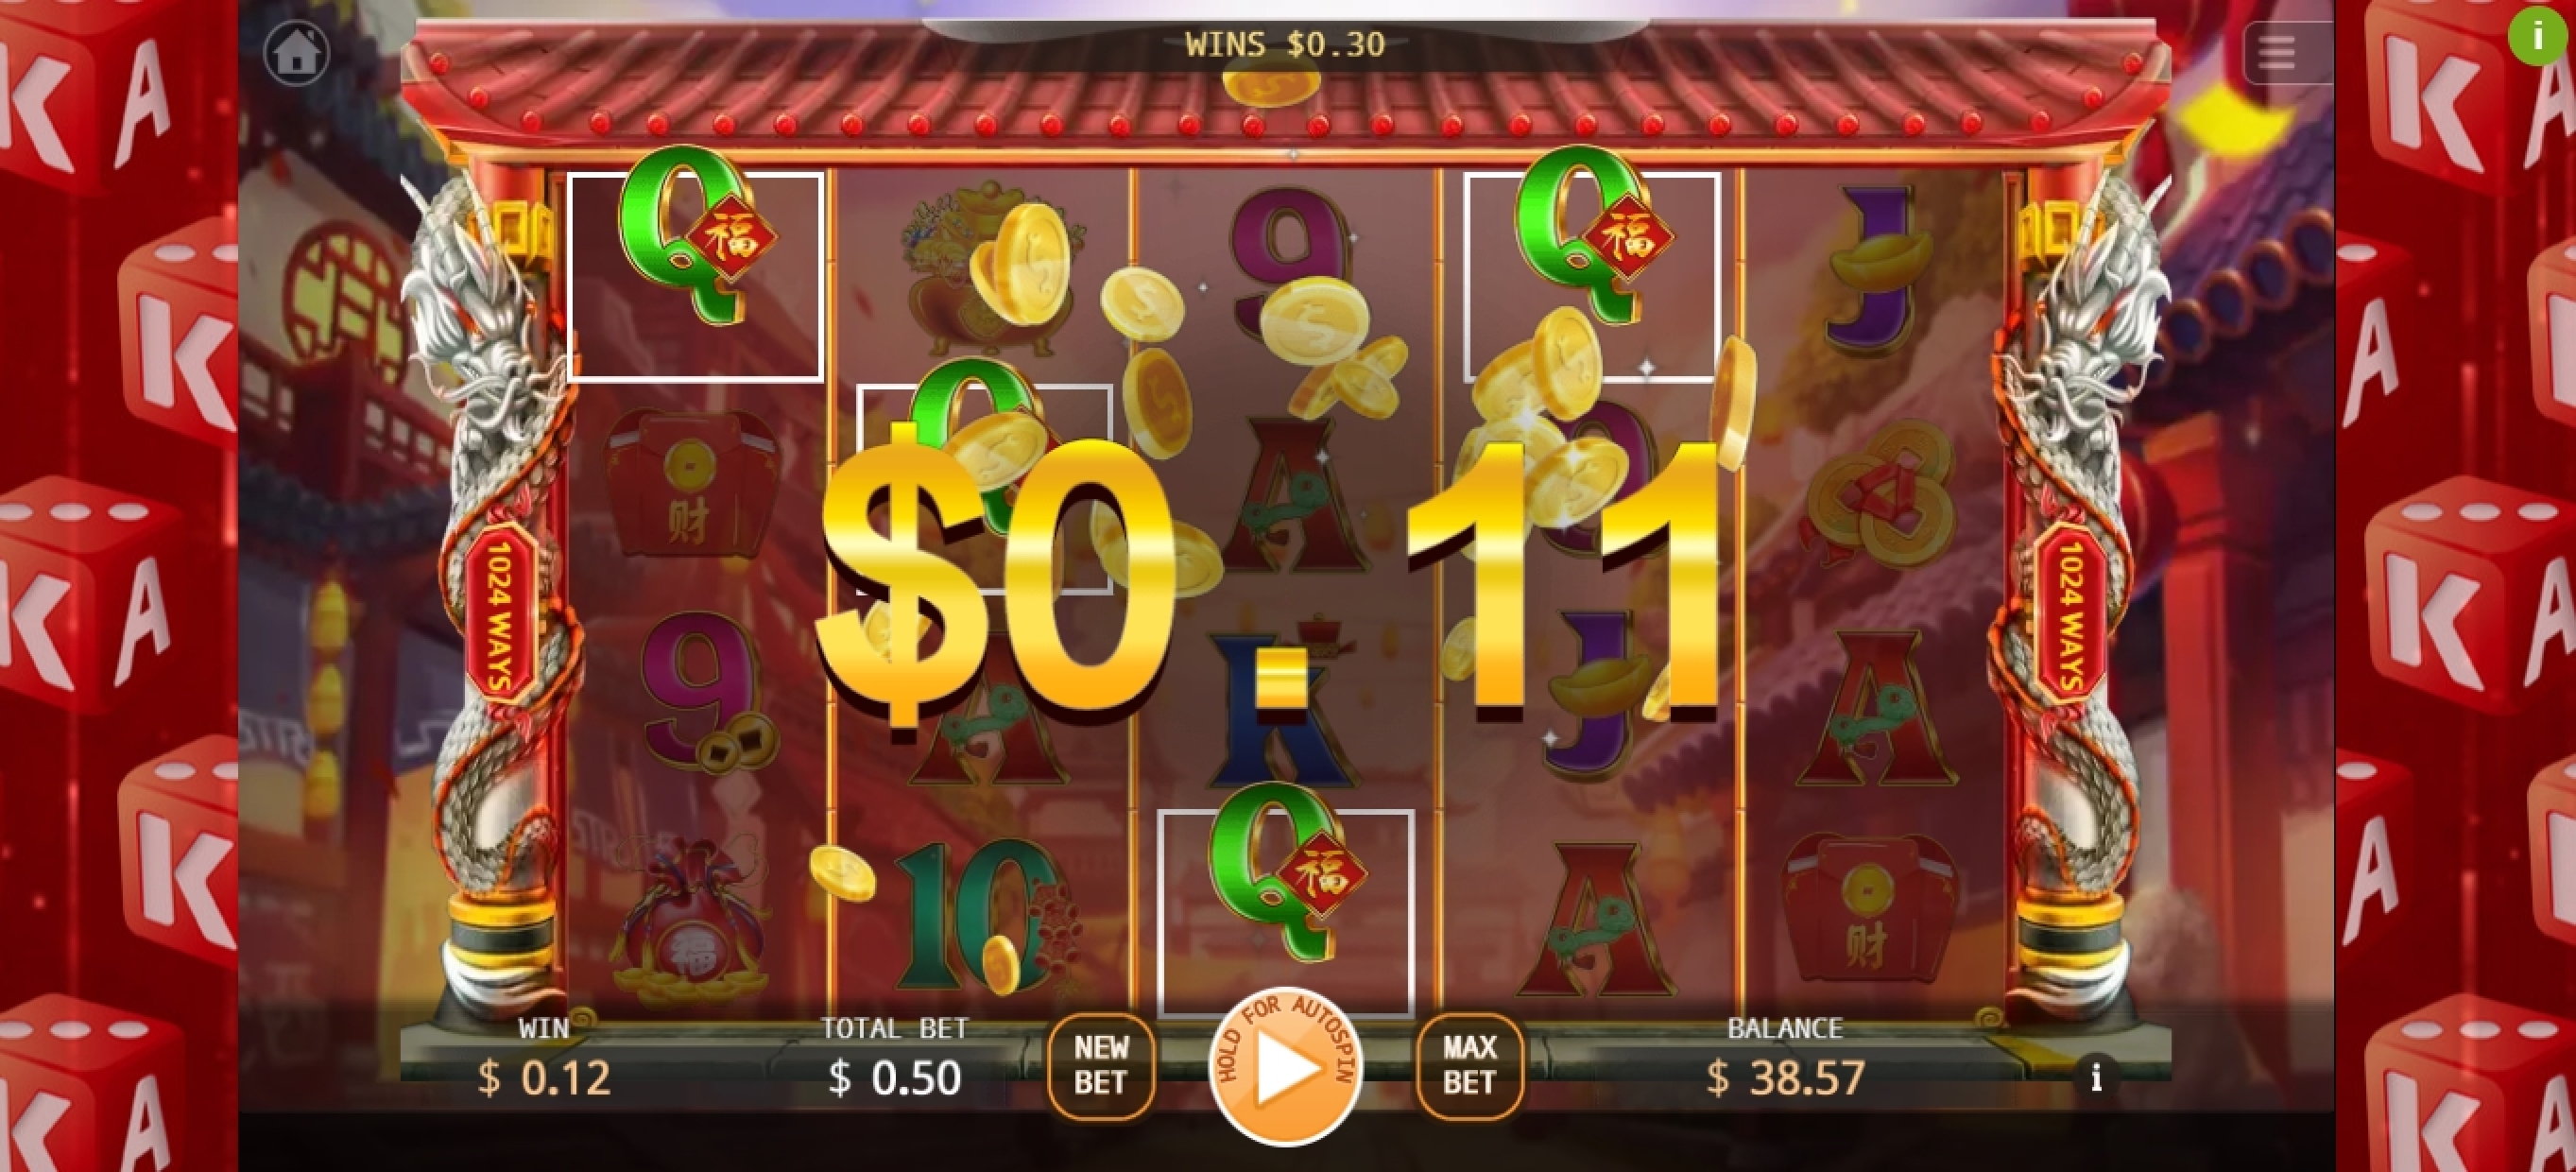 Win Money in Cai Yuan Guang Jin Free Slot Game by KA Gaming